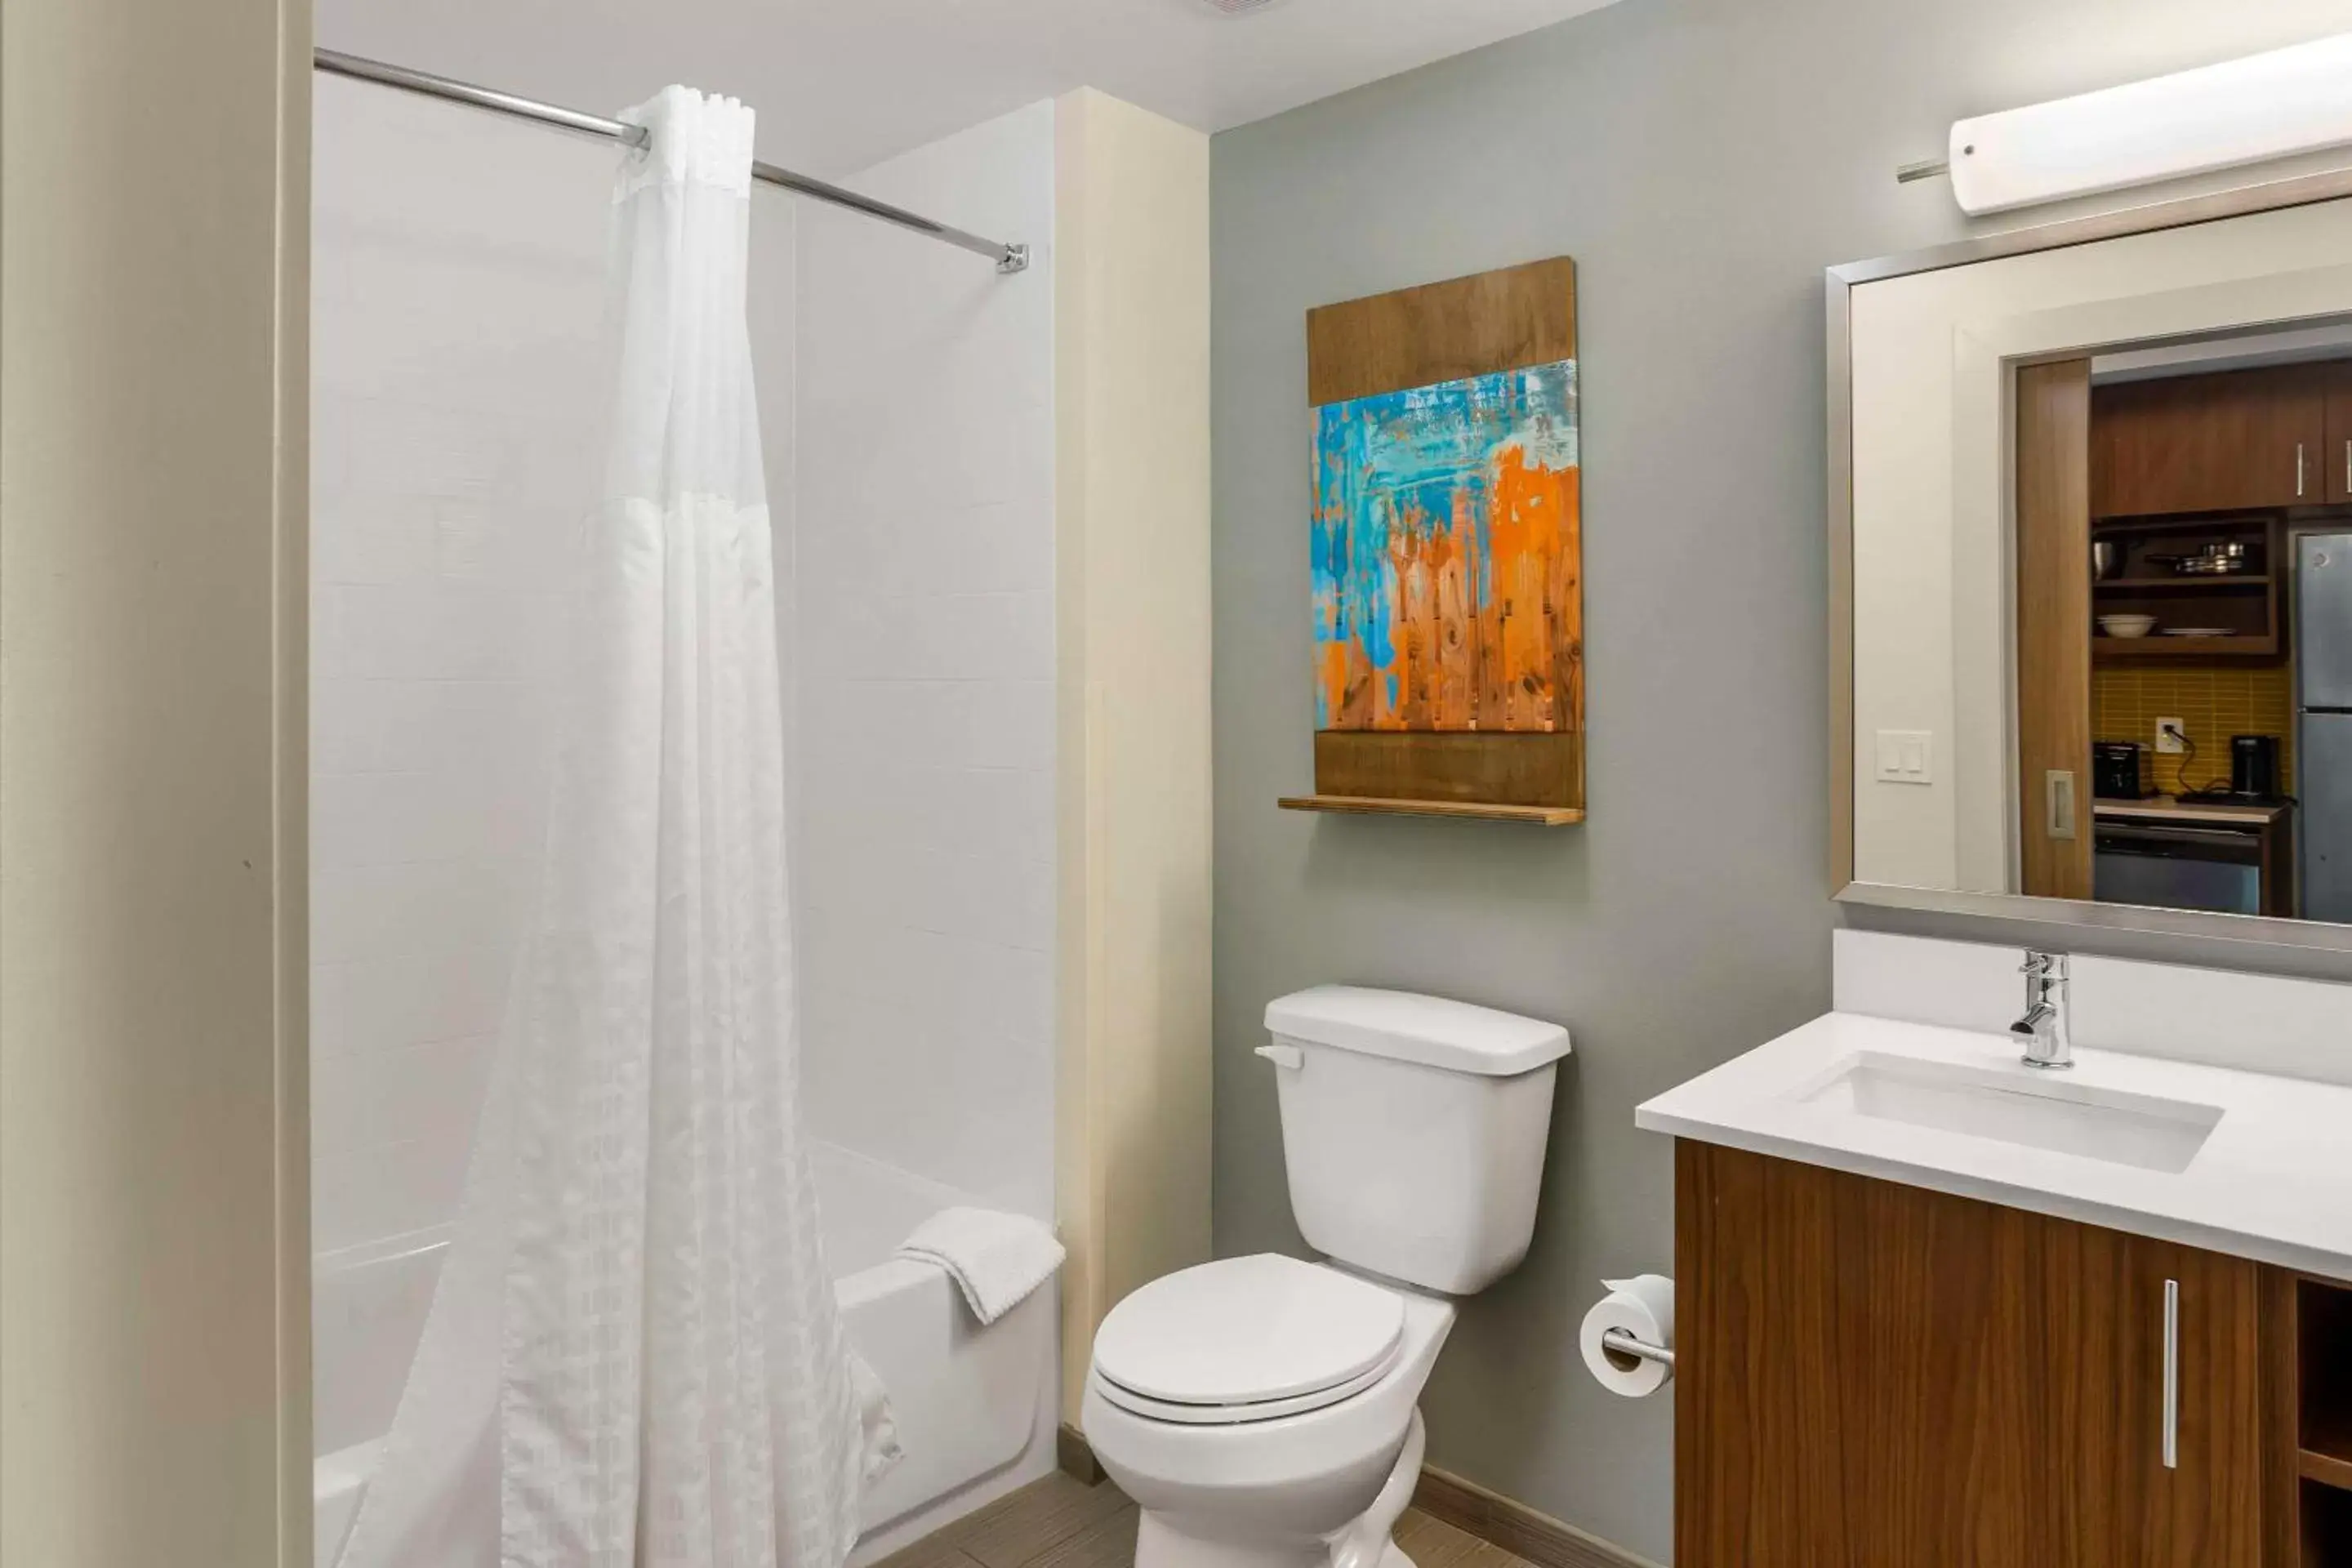 Bedroom, Bathroom in MainStay Suites North - Central York